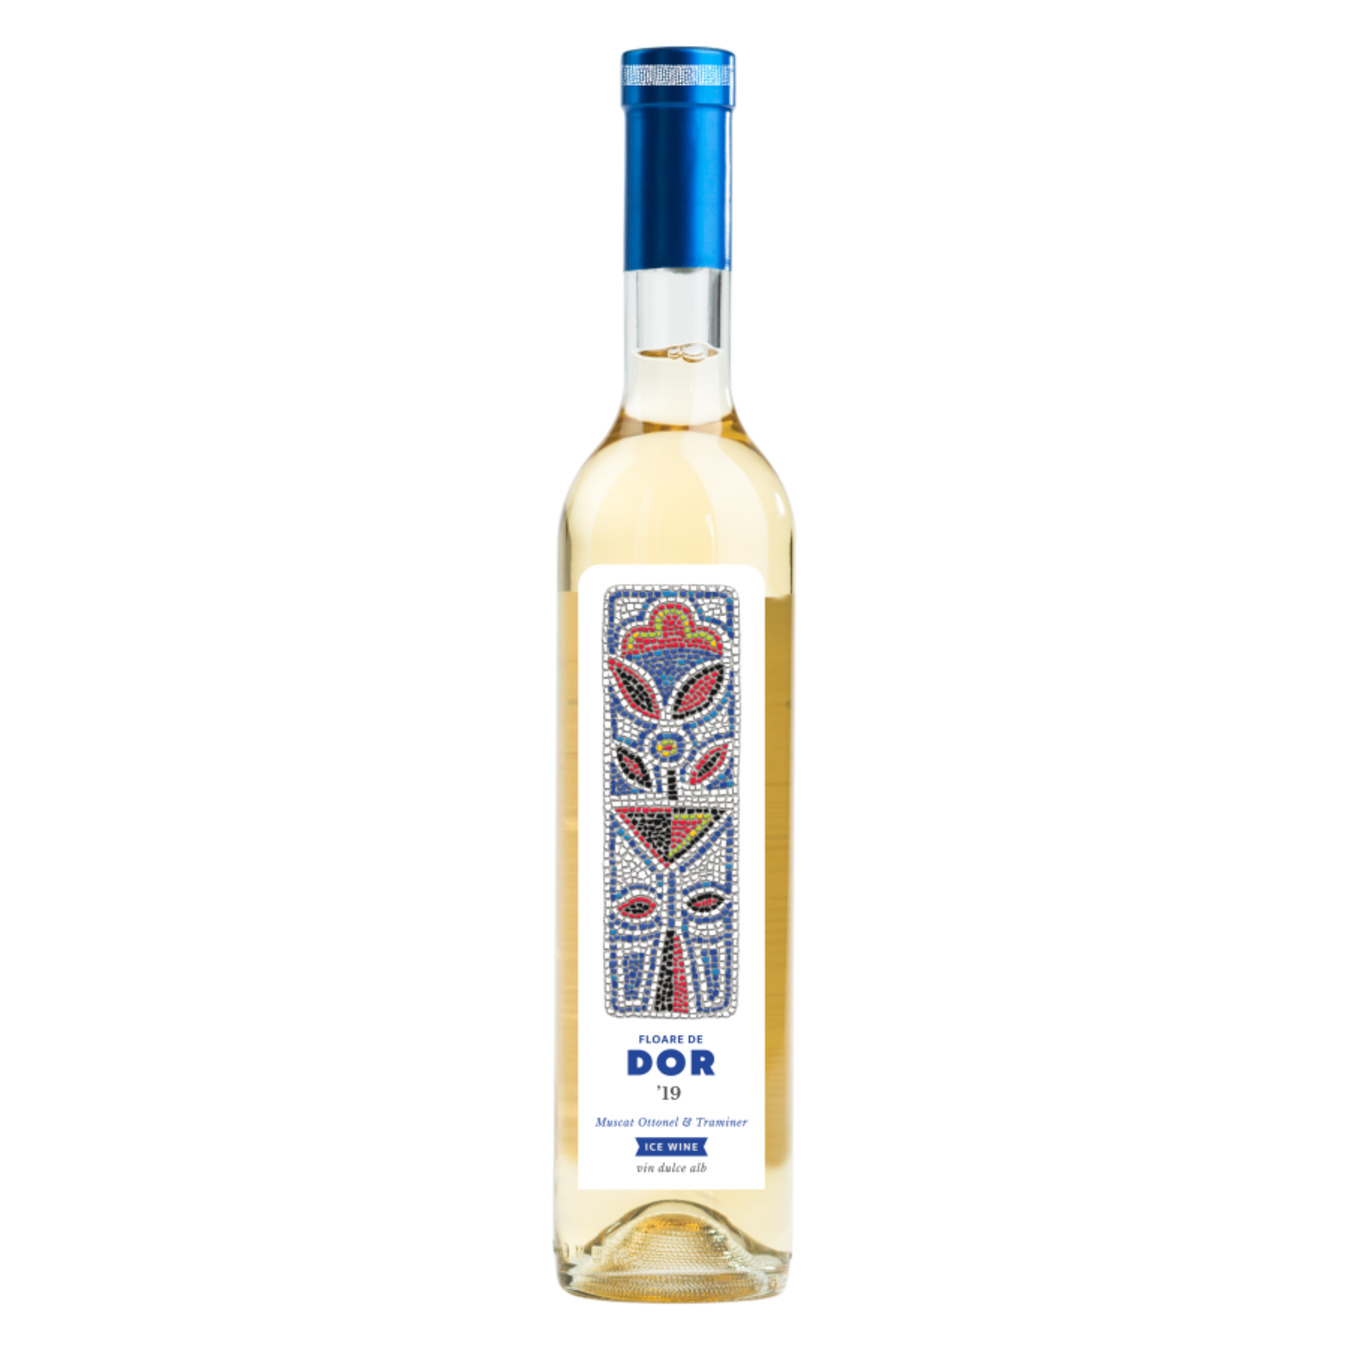 Wine Bostavan Floor de Dor Ice Wine Muscat Ottonel-Traminer white dry 13.3% 0.5l